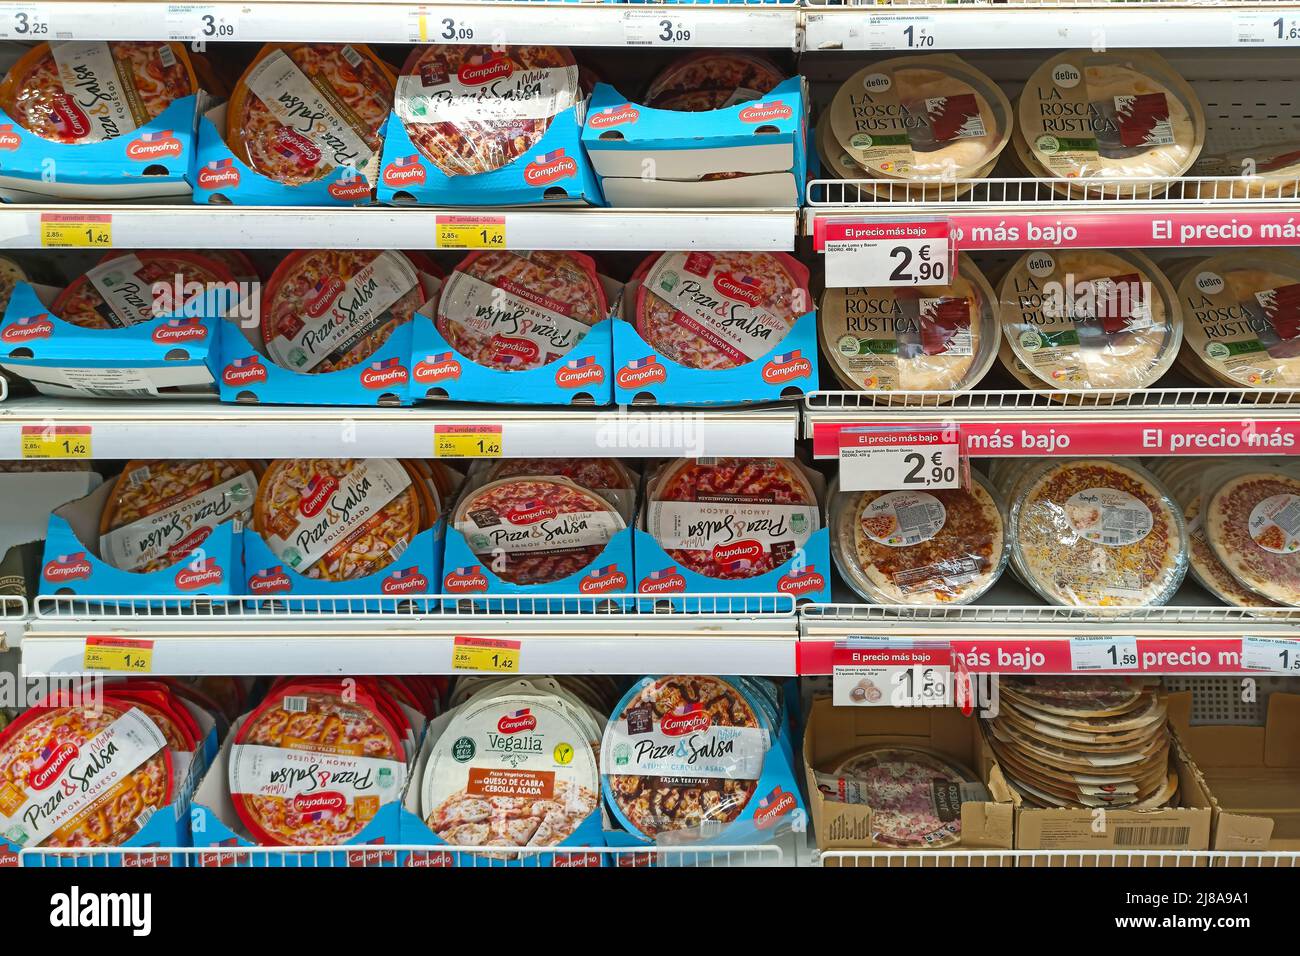 Huelva, Spain - May 10, 2022: Shelf of ready to bake pizza in a supermarket Stock Photo